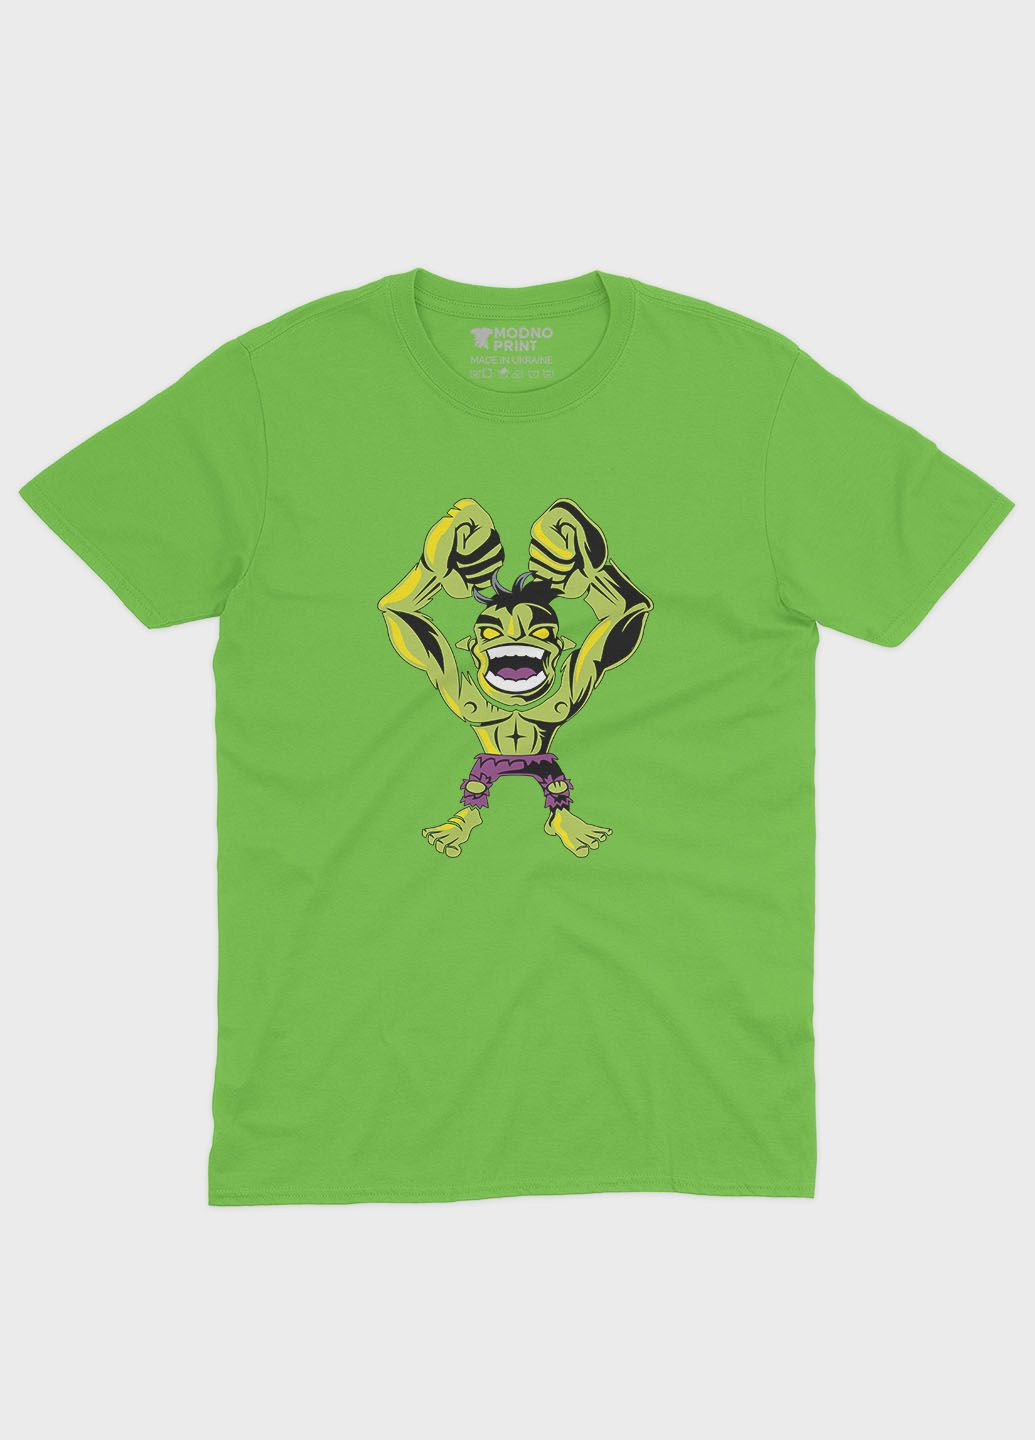 Салатовая демисезонная футболка для мальчика с принтом супергероя - халк (ts001-1-kiw-006-018-002-b) Modno